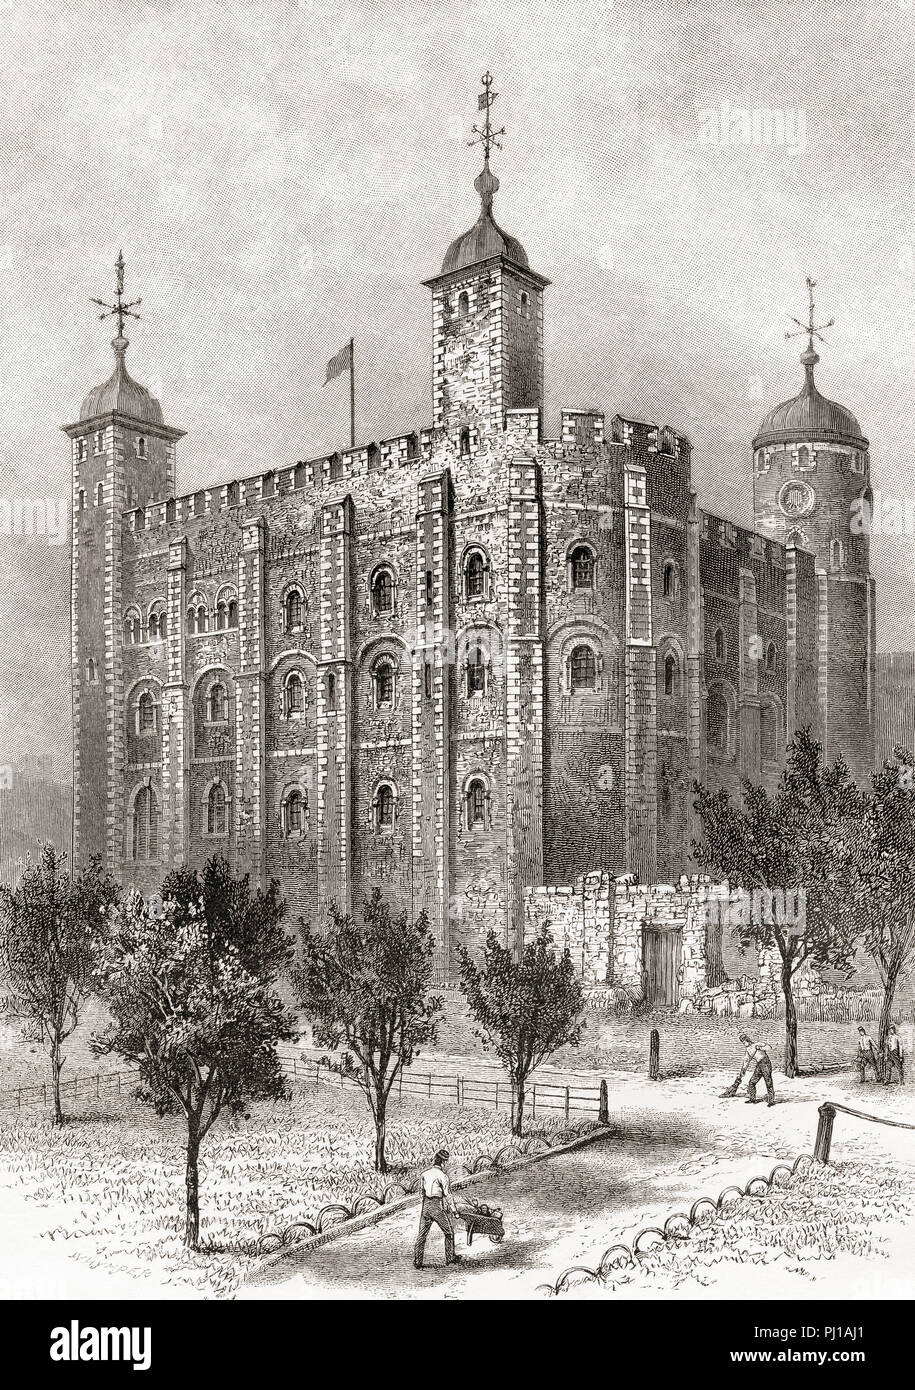 La Torre Blanca, visto desde el sudeste. La Torre Blanca, una torre central, la vieja conserve, en la Torre de Londres, Inglaterra. Imágenes de Londres, publicado el año 1890. Foto de stock